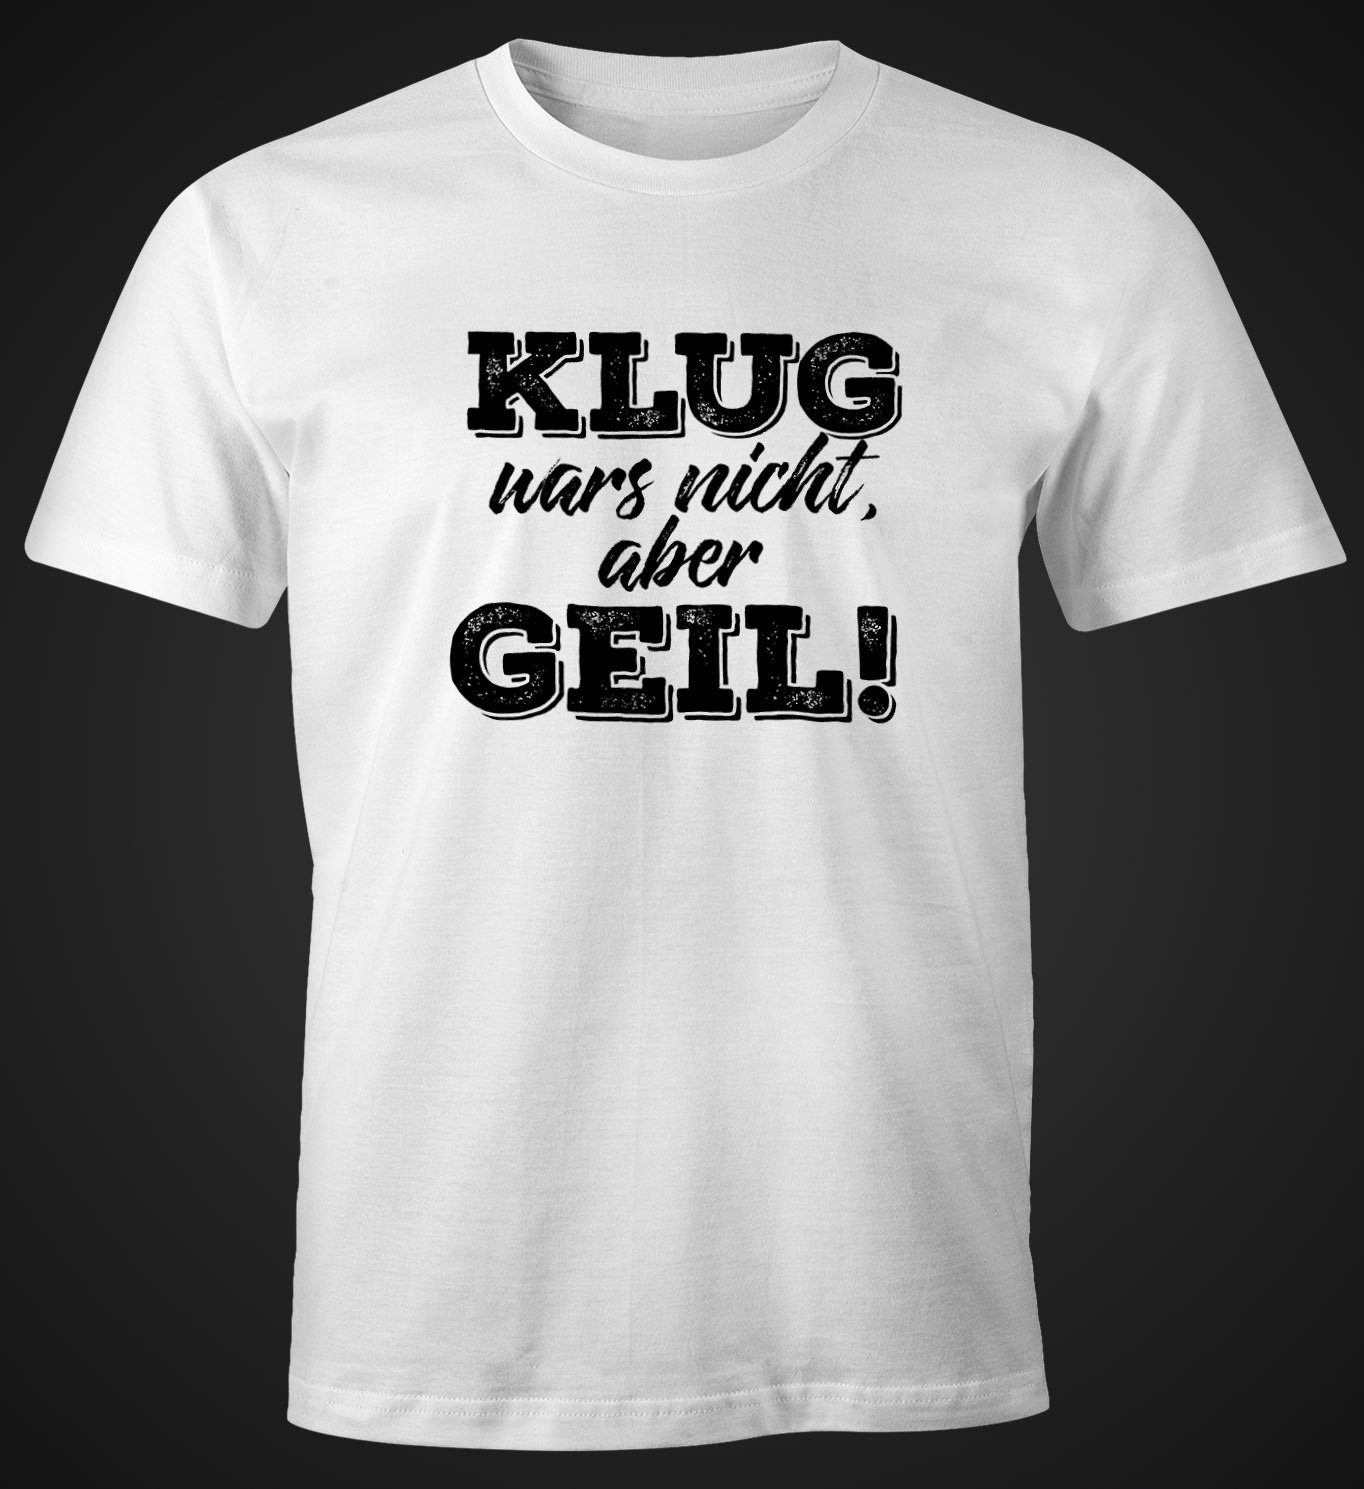 MoonWorks Print-Shirt Herren T-Shirt mit mit Klug Spruch Moonworks® weiß wars nicht aber Print geil Fun-Shirt